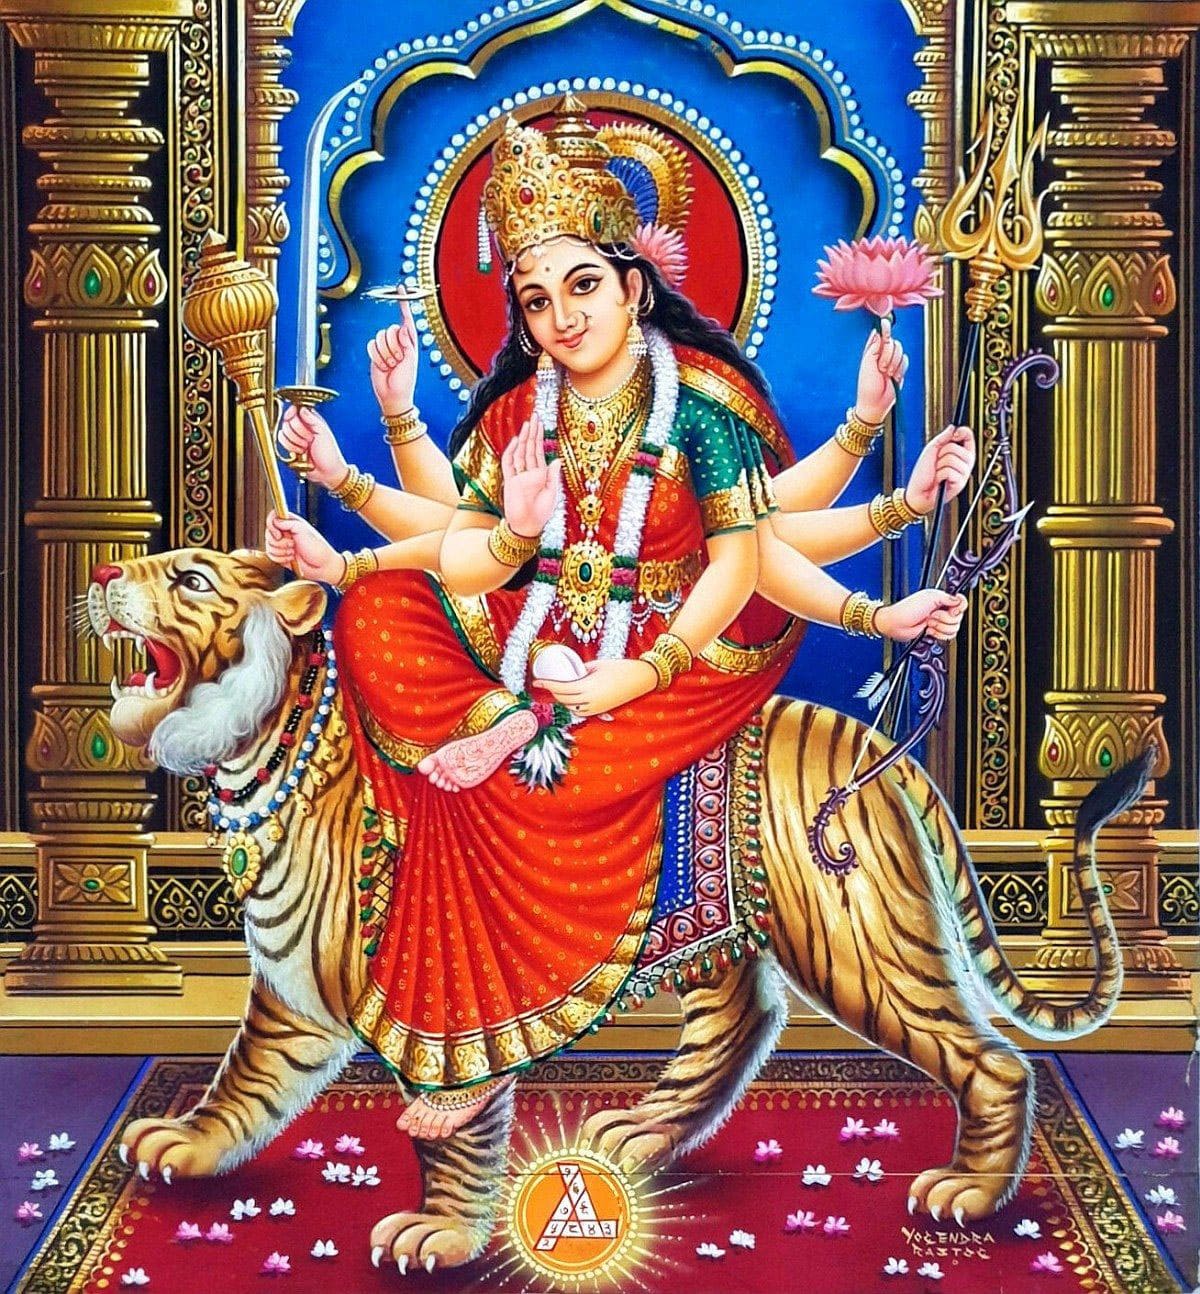 30+] Jai Maa Durga Wallpapers - WallpaperSafari